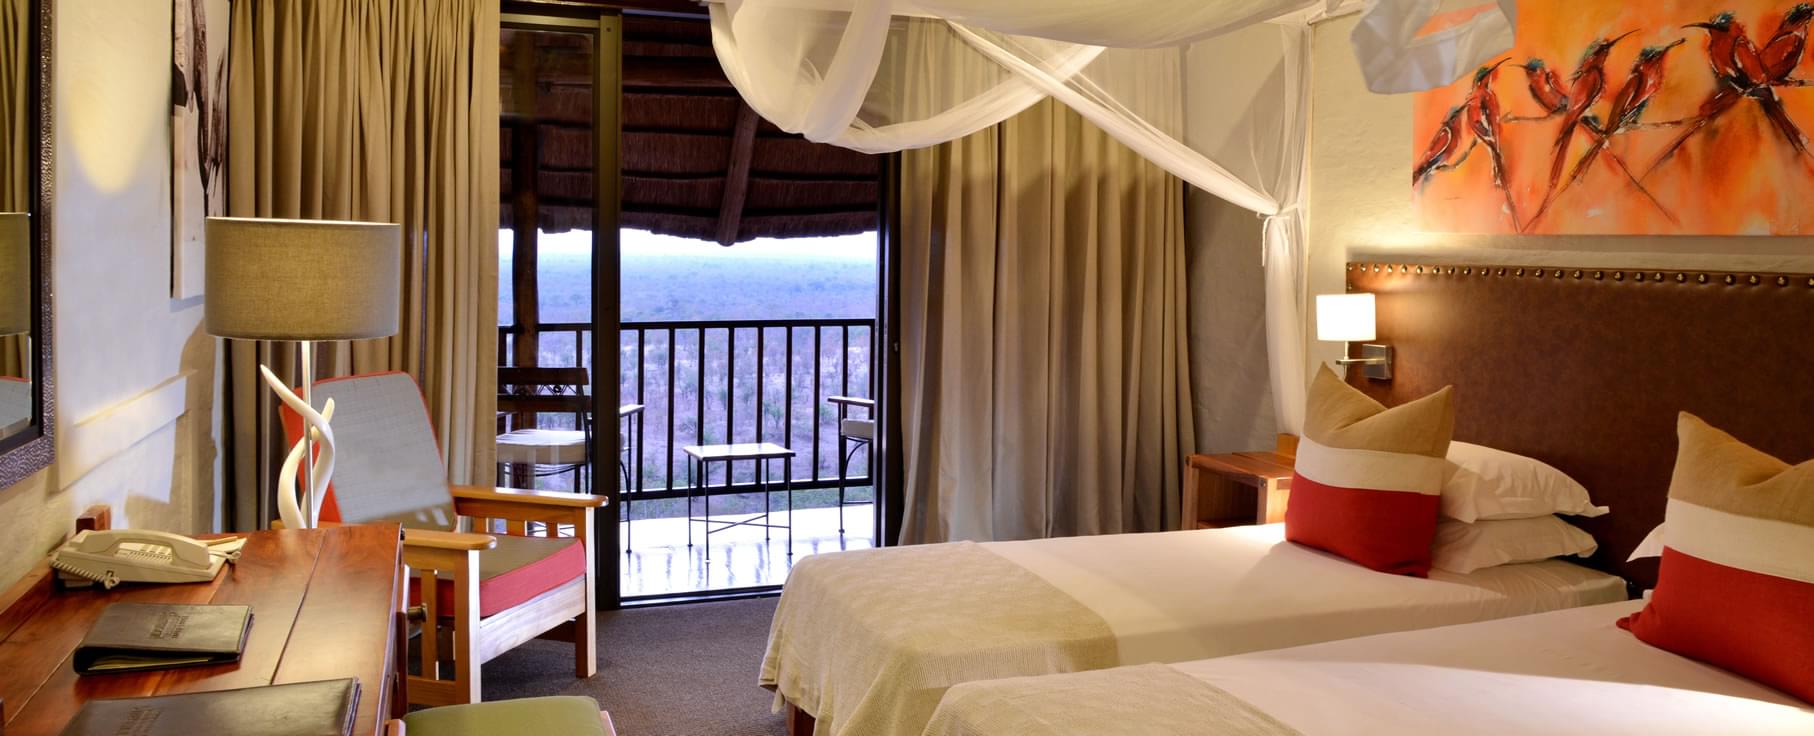 【南アフリカ】ビクトリア・フォールズ観光で泊まりたいラグジュアリーなホテル♡